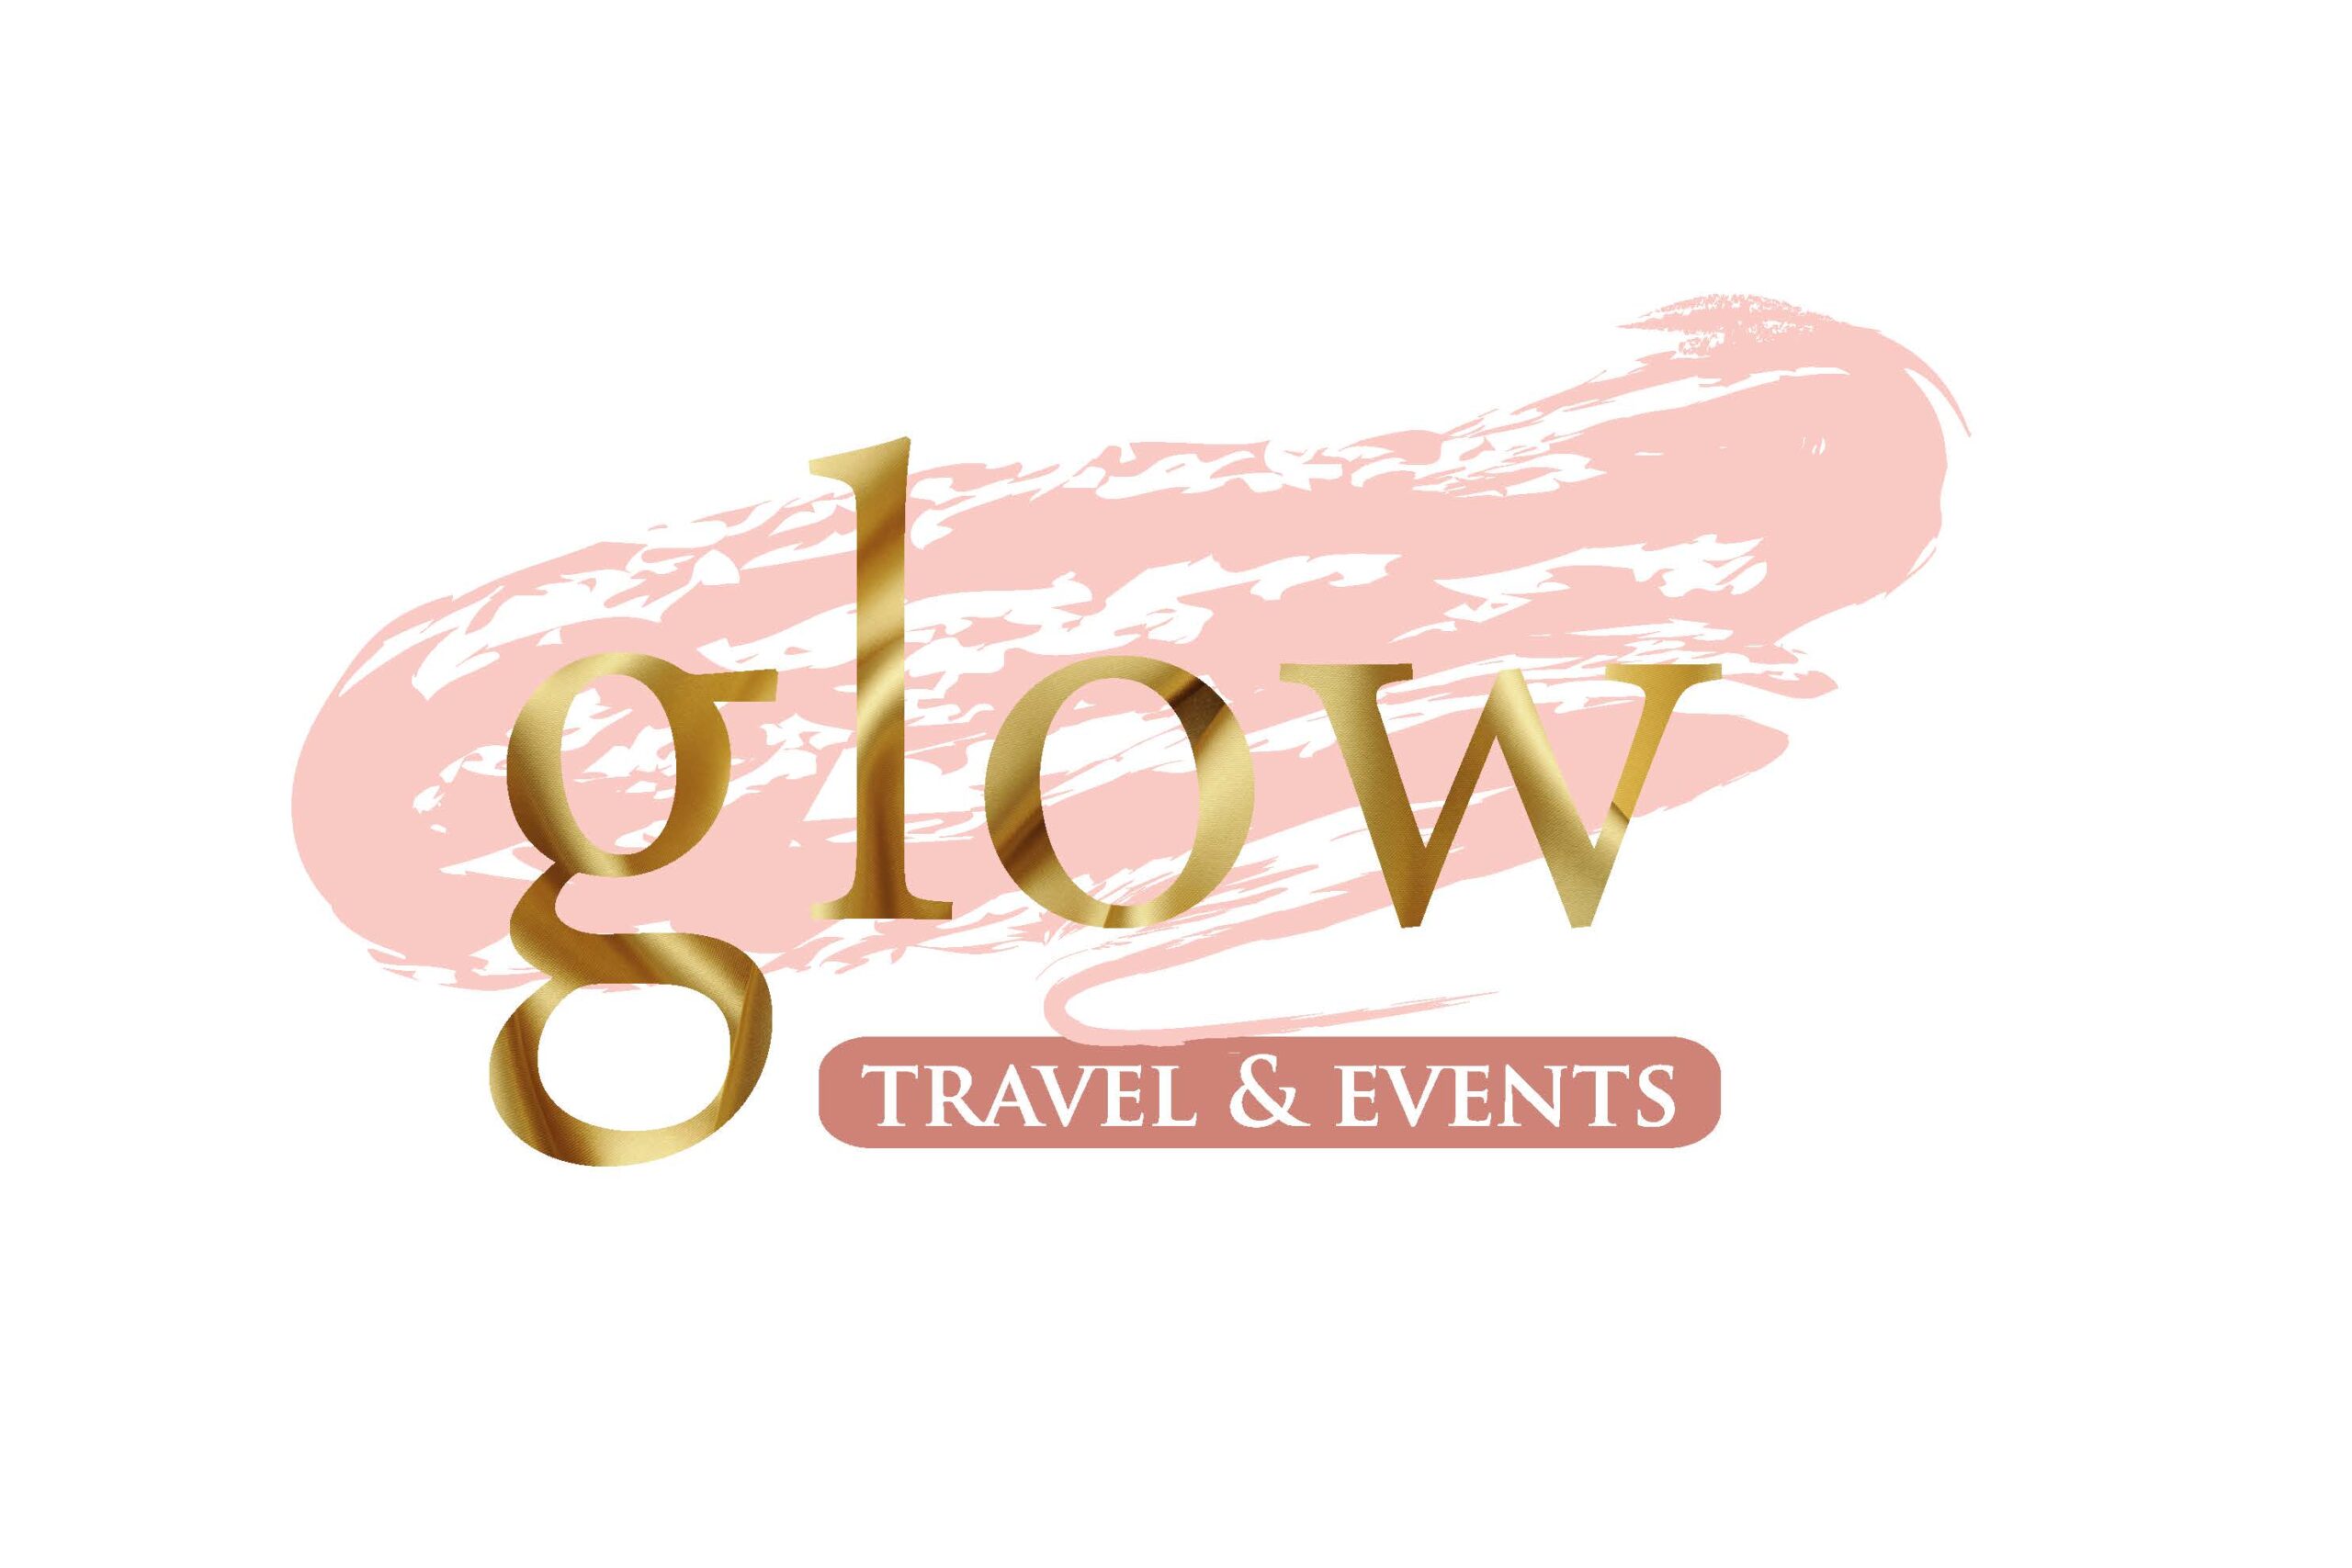 GlowTravel